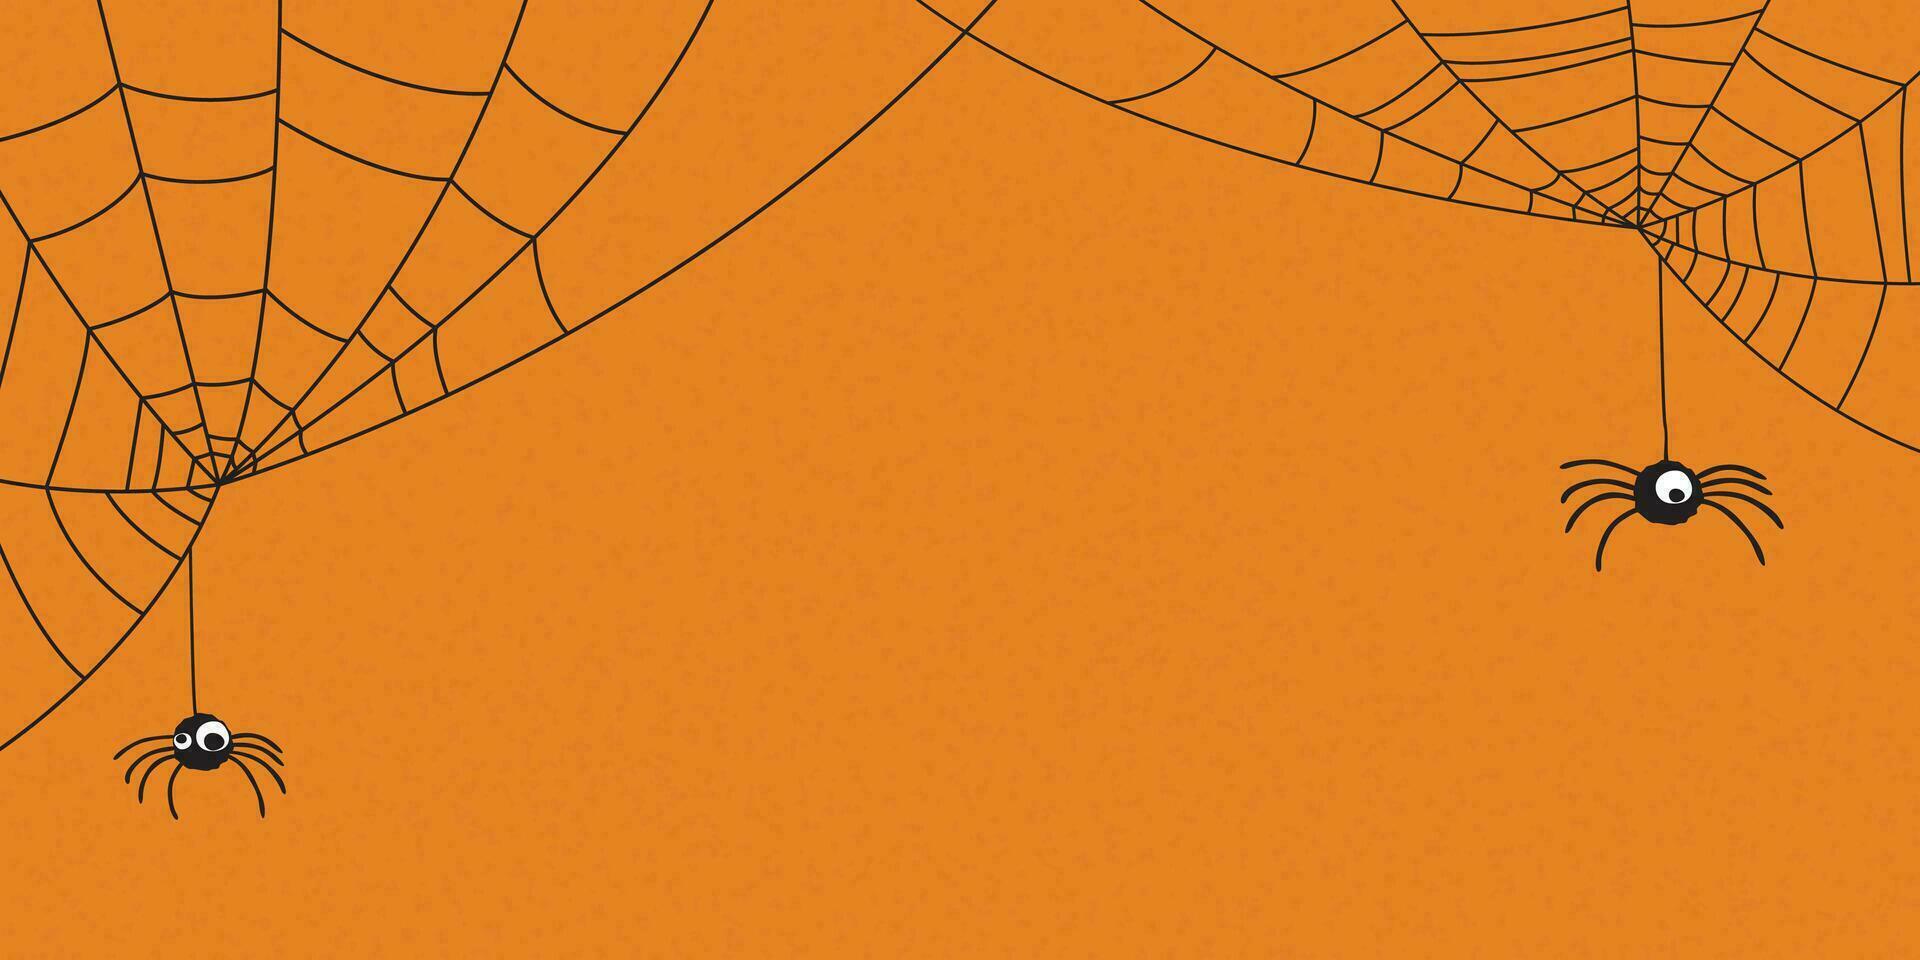 grappig spinnen met spin web tekening lijn kinderachtig stijl vector illustratie hebben blanco ruimte. gelukkig halloween groet kaart sjabloon.